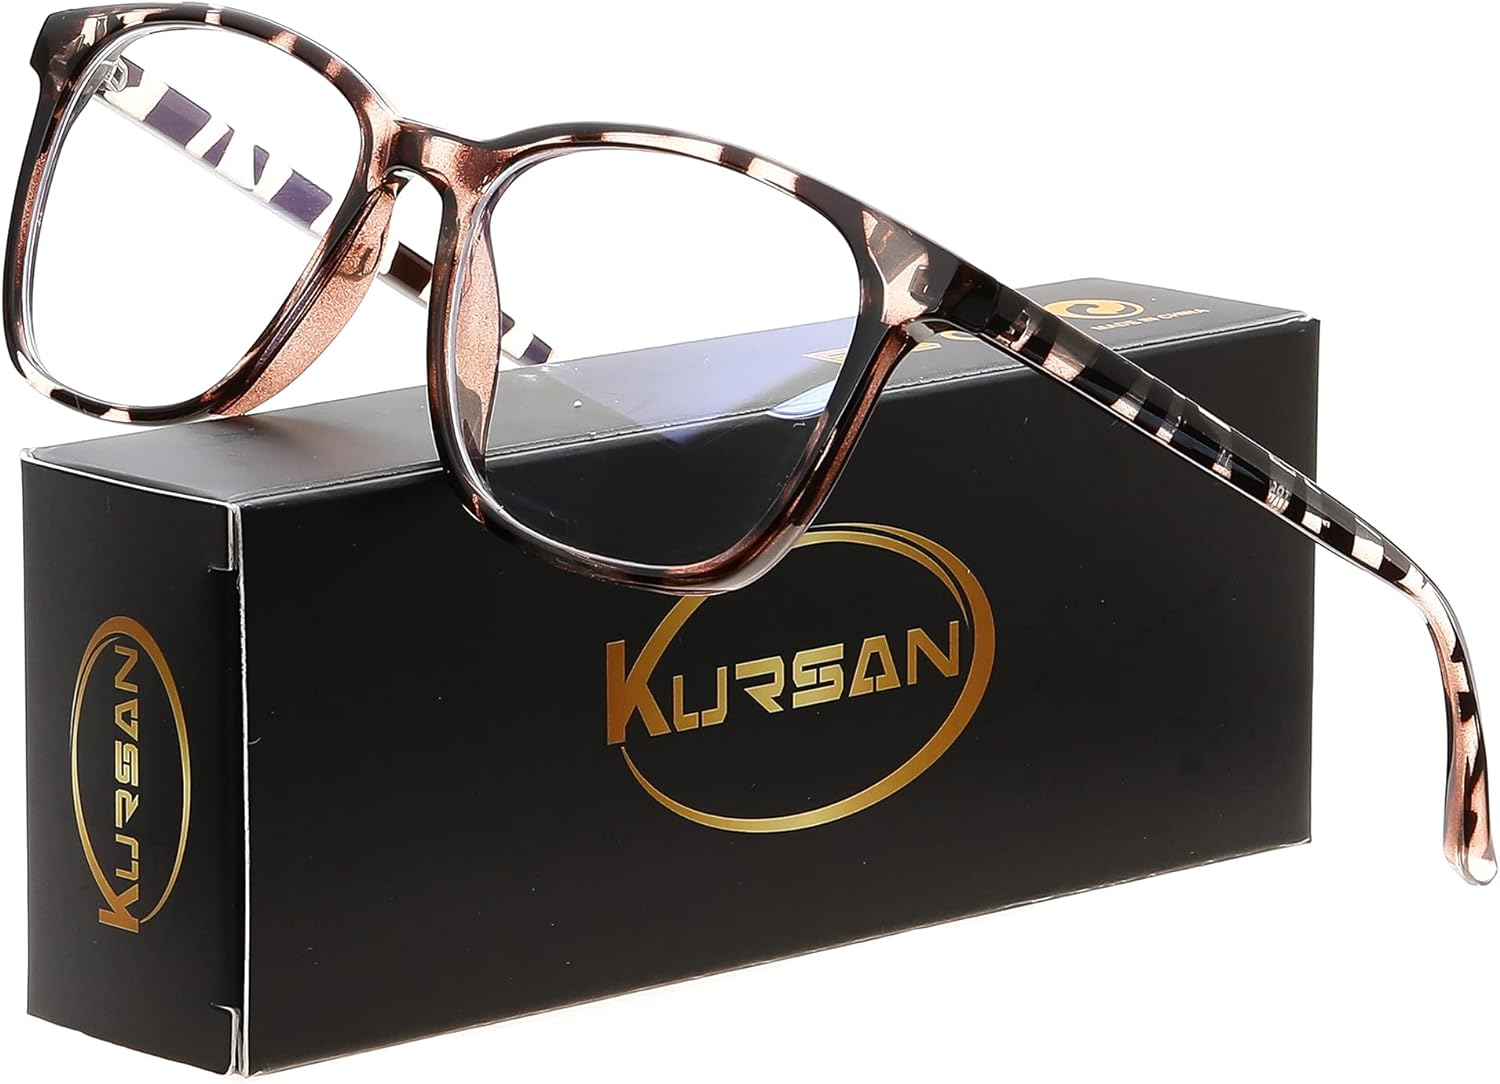 Kursan Oversized Square Glasses Review